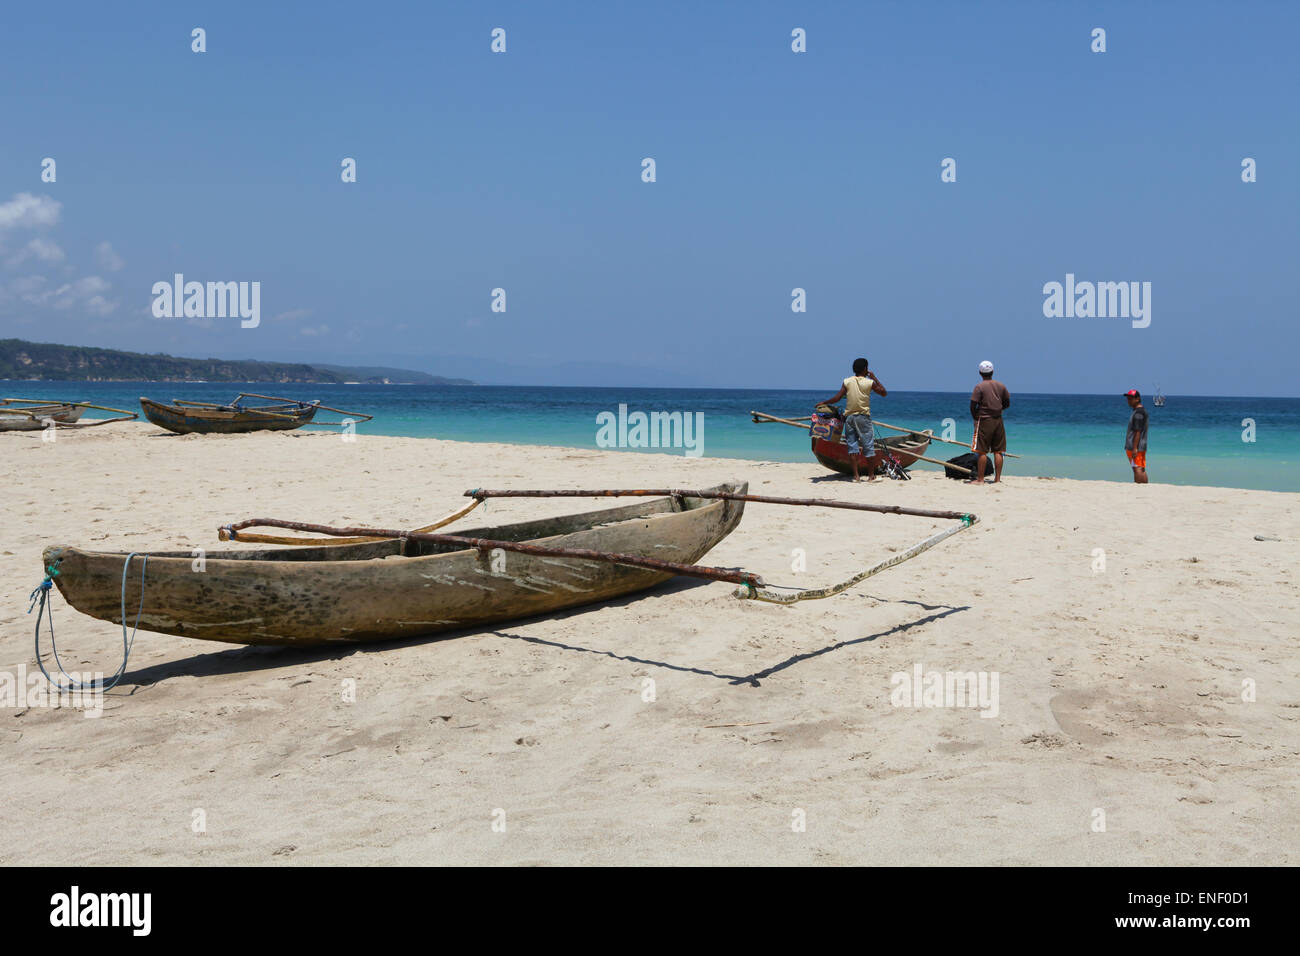 Pescatori e una canoa da pesca sulla spiaggia che si affaccia sull'Oceano Indiano, nel villaggio di Wanokaka a Sumba Island, West Sumba, East Nusa Tenggara, Indonesia. Foto Stock